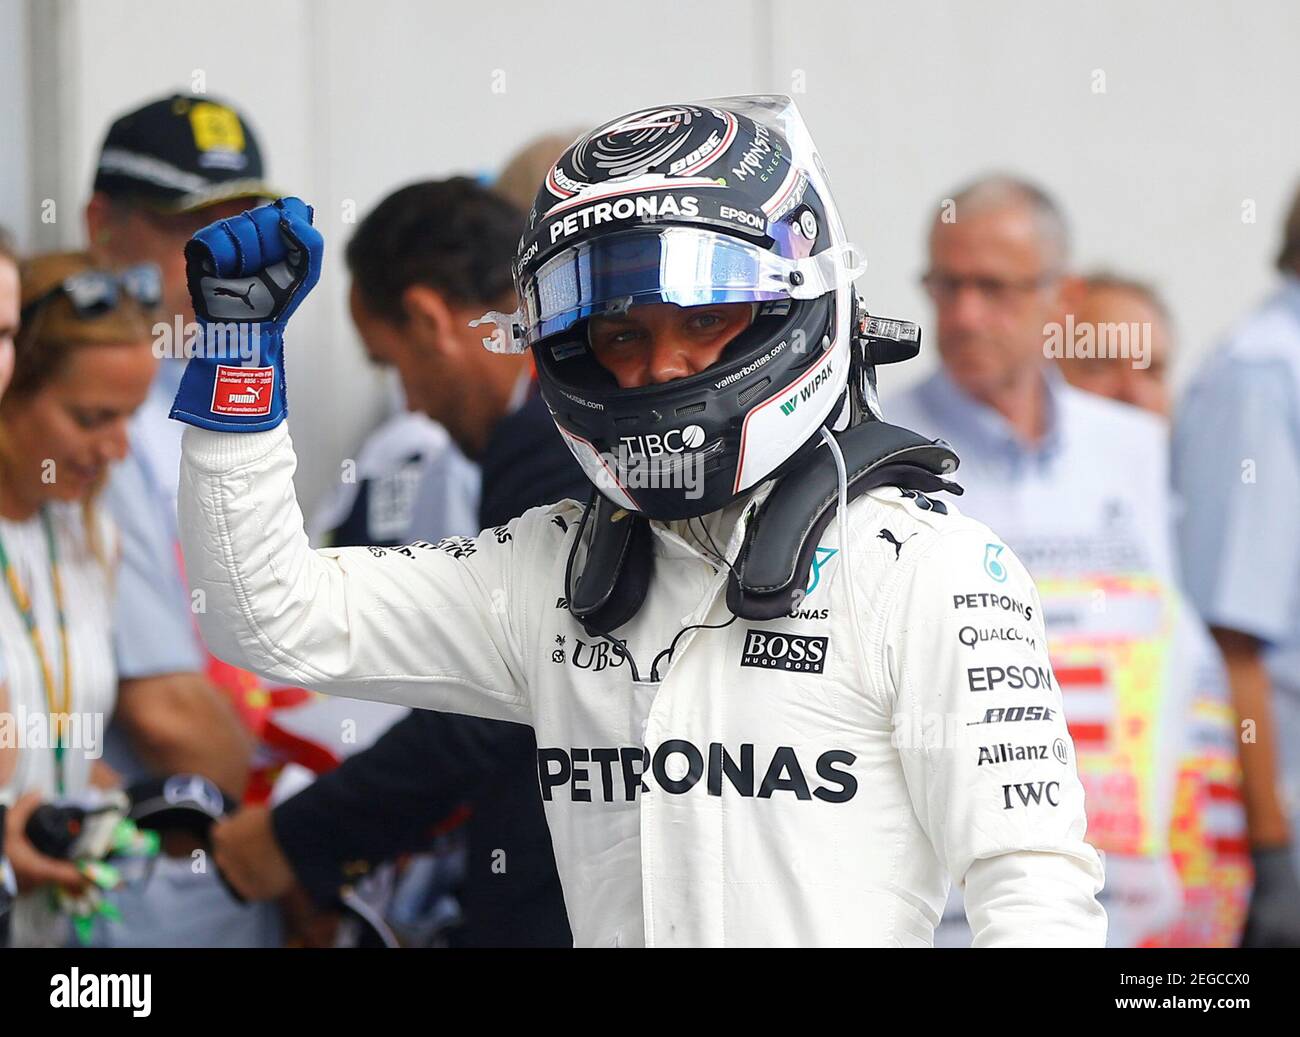 Formel 1 - F1 - großer Preis von Österreich 2017 - Red Bull Ring, Spielberg, Österreich - 8. Juli 2017 Mercedes' Valtteri Bottas (C) feiert Pole nach dem Qualifying Reuters/Dominic Ebenbichler Stockfoto